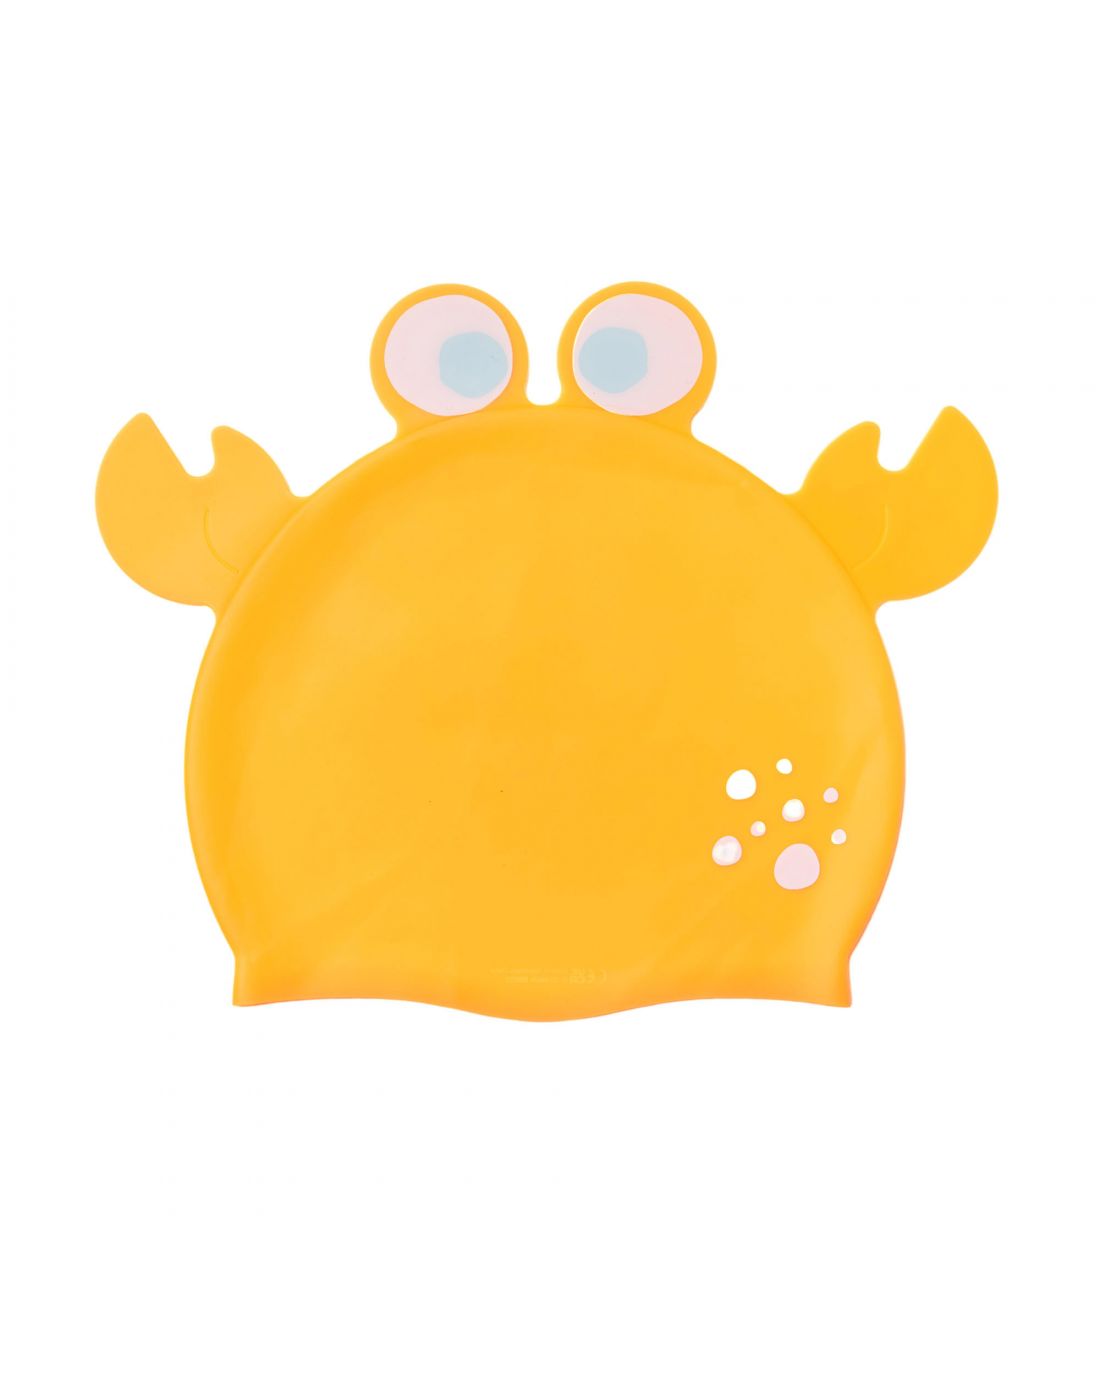 Παιδικό Σκουφάκι Κολύμβησης SunnyLife onny the Sea Creature Neon Orange